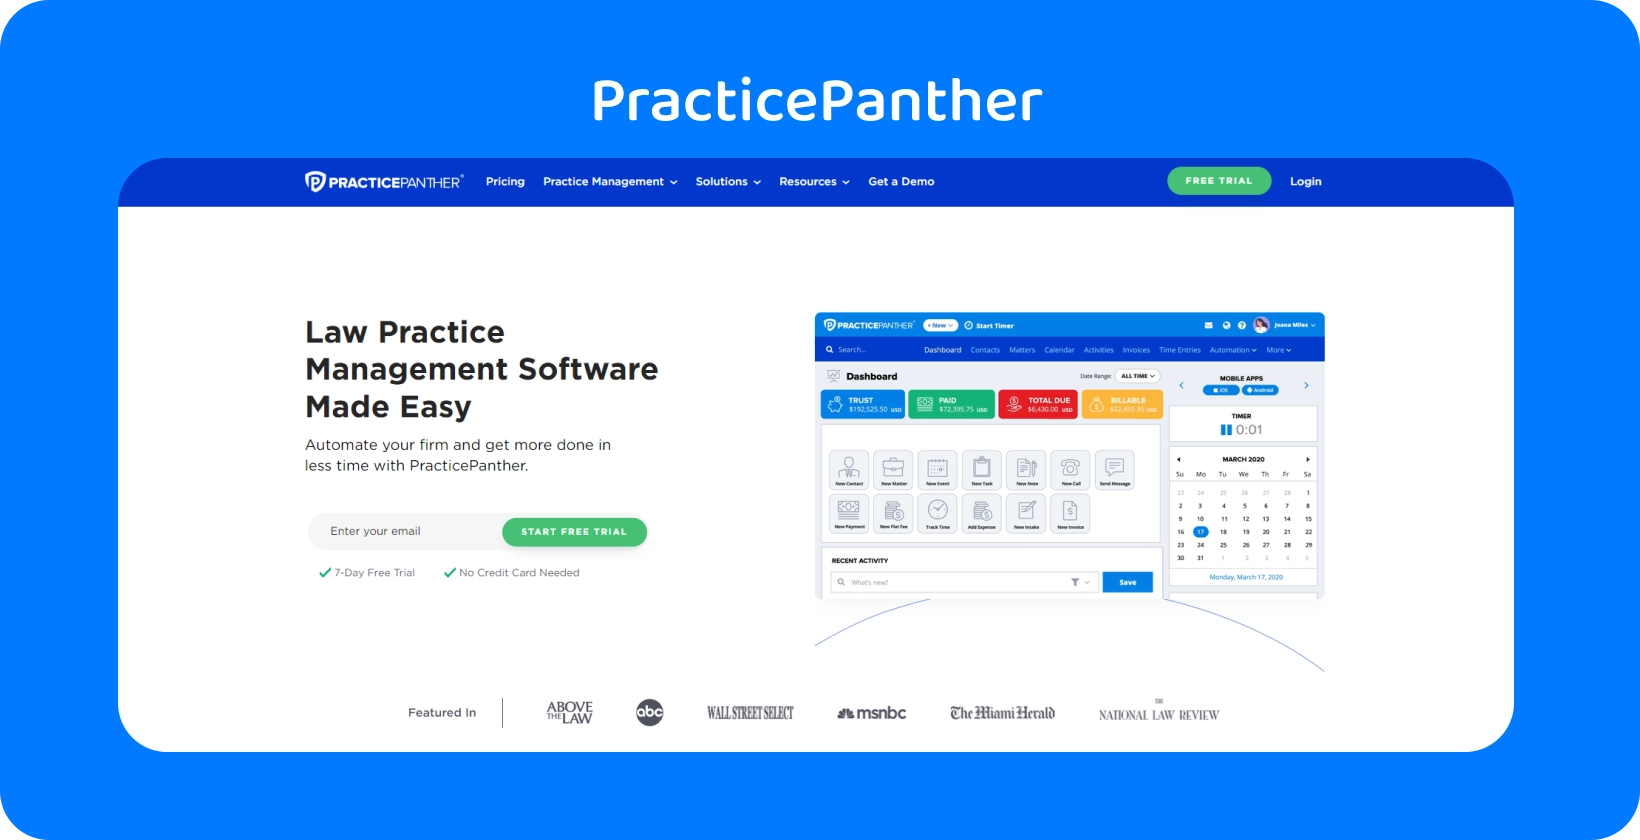 Le tableau de bord de PracticePanther, présentant des outils pour la gestion de la pratique du droit.